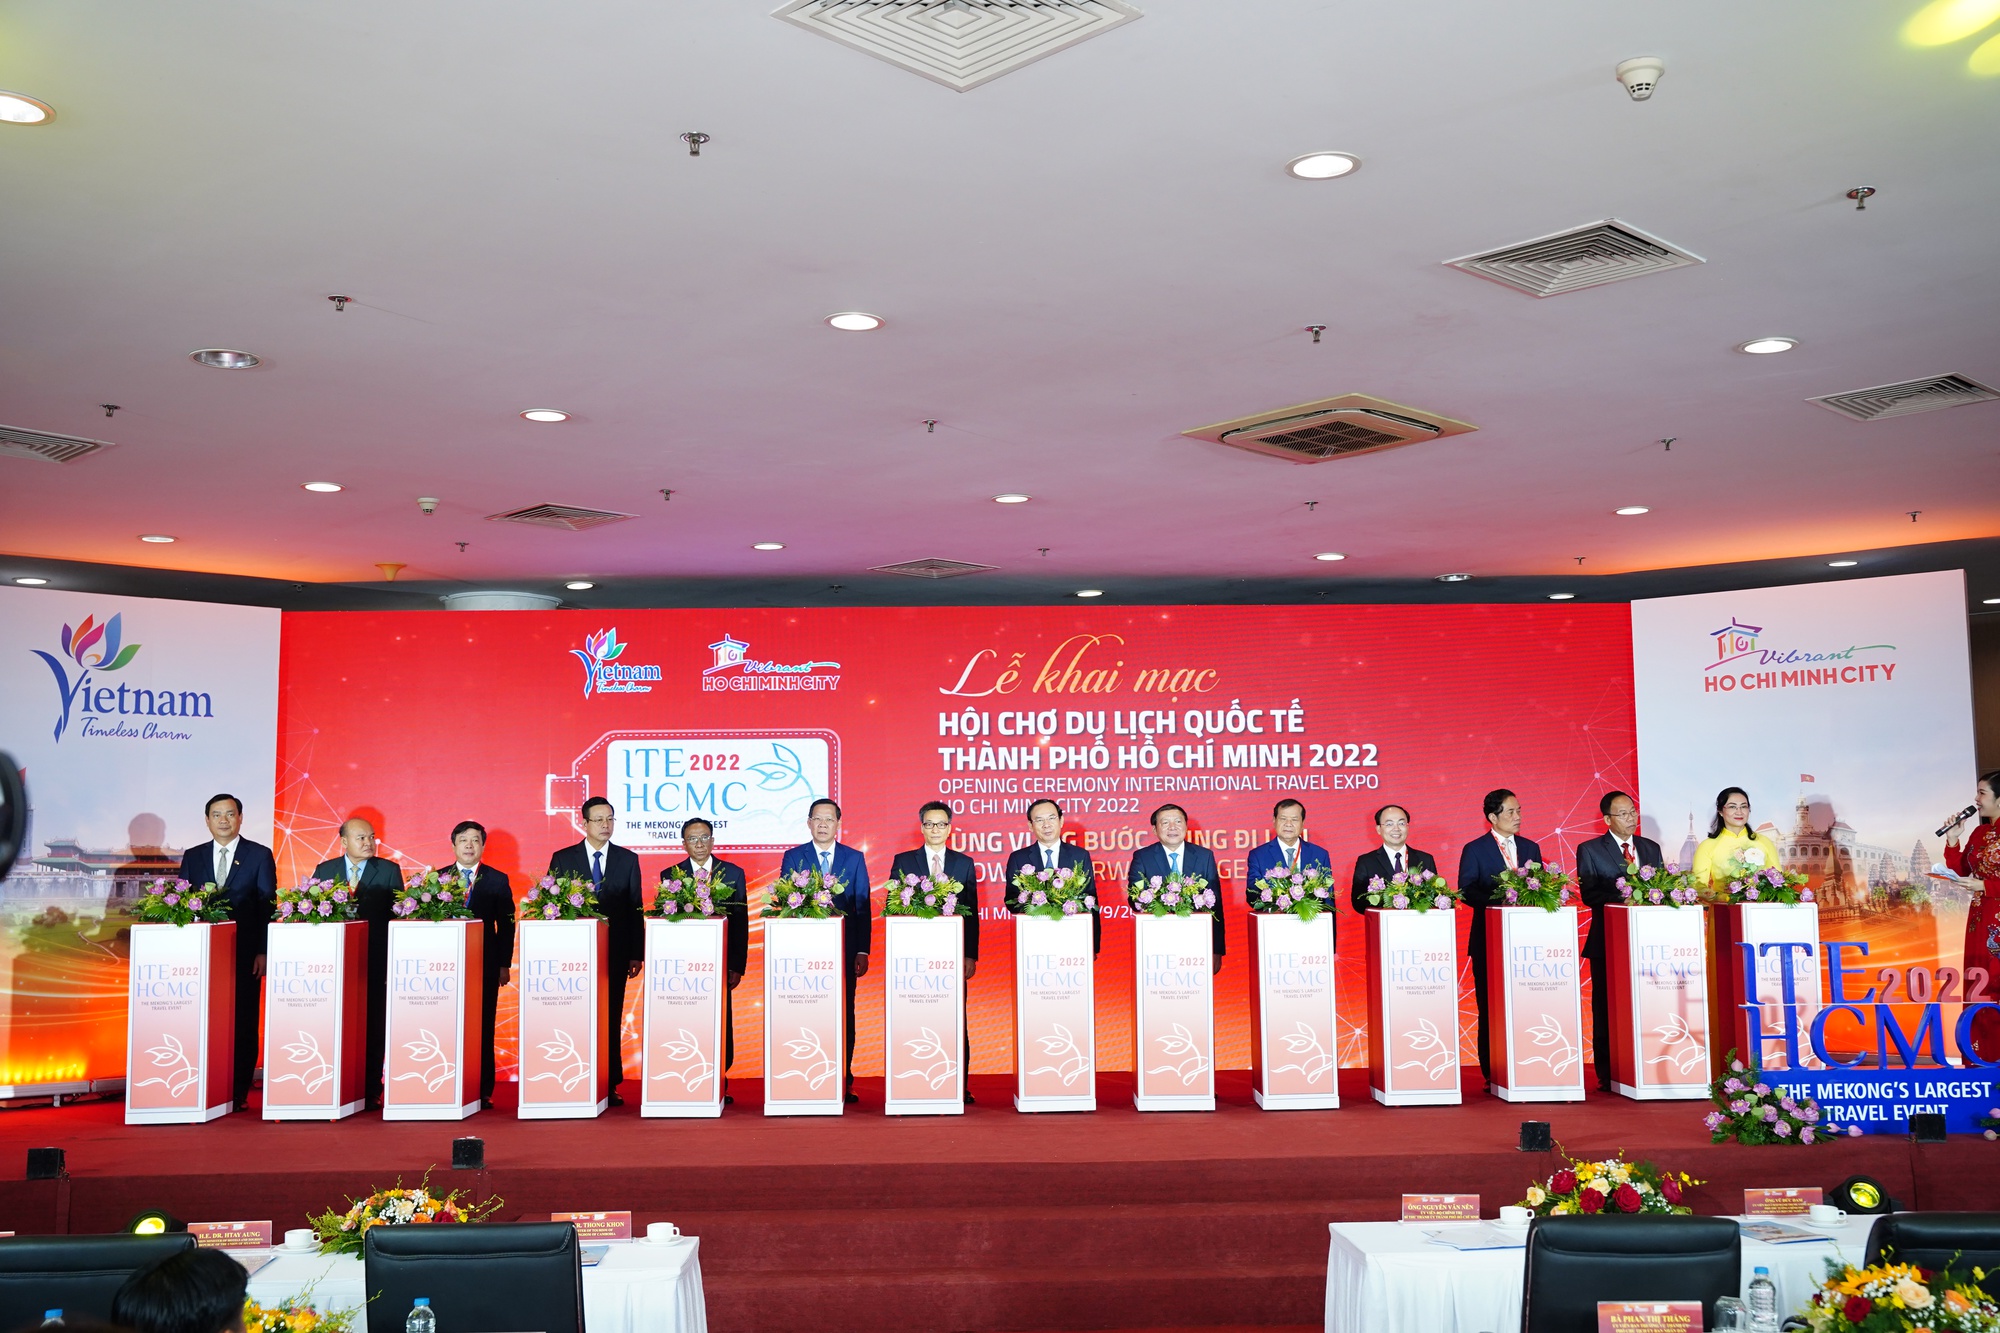 Khai mạc Hội chợ Du lịch Quốc tế TPHCM 2022 - ITE HCMC 2022 - Ảnh 1.